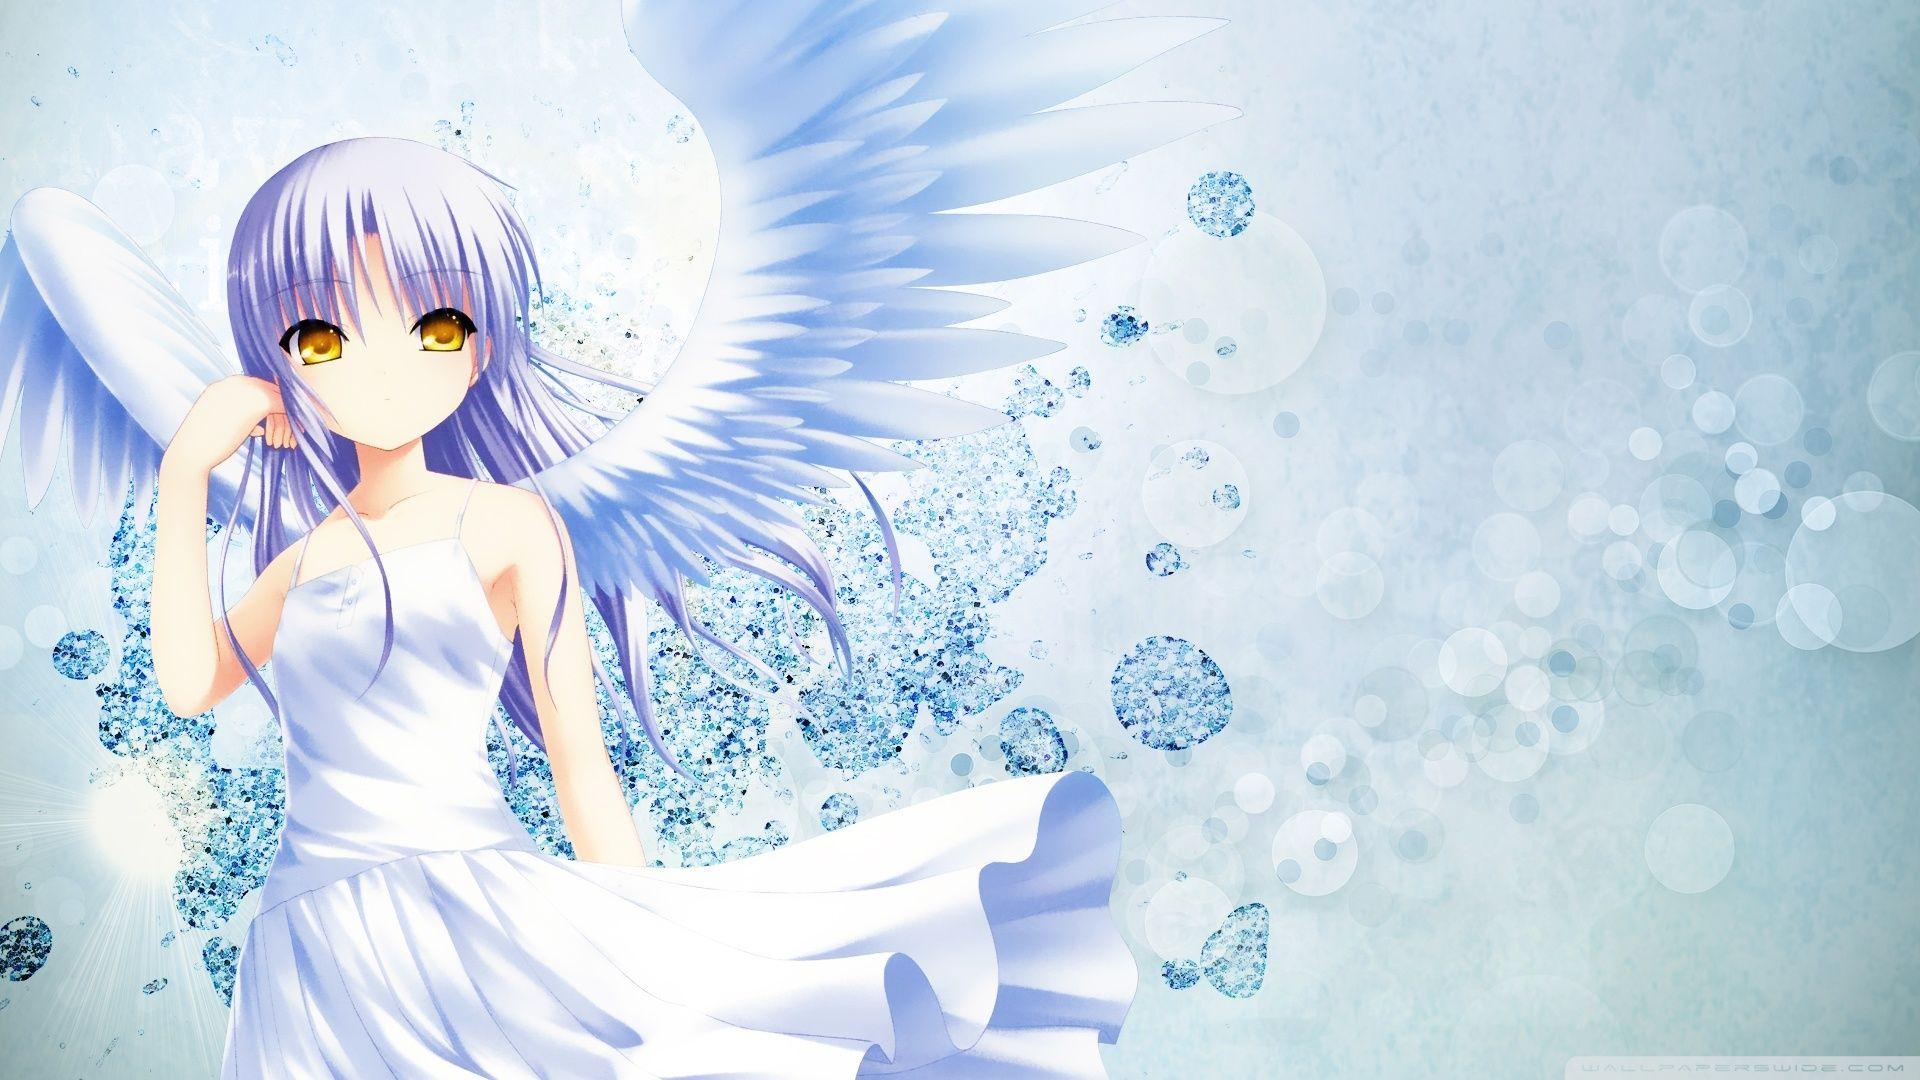 Anime Angel Ultra HD Desktop Background Wallpaper for 4K UHD TV